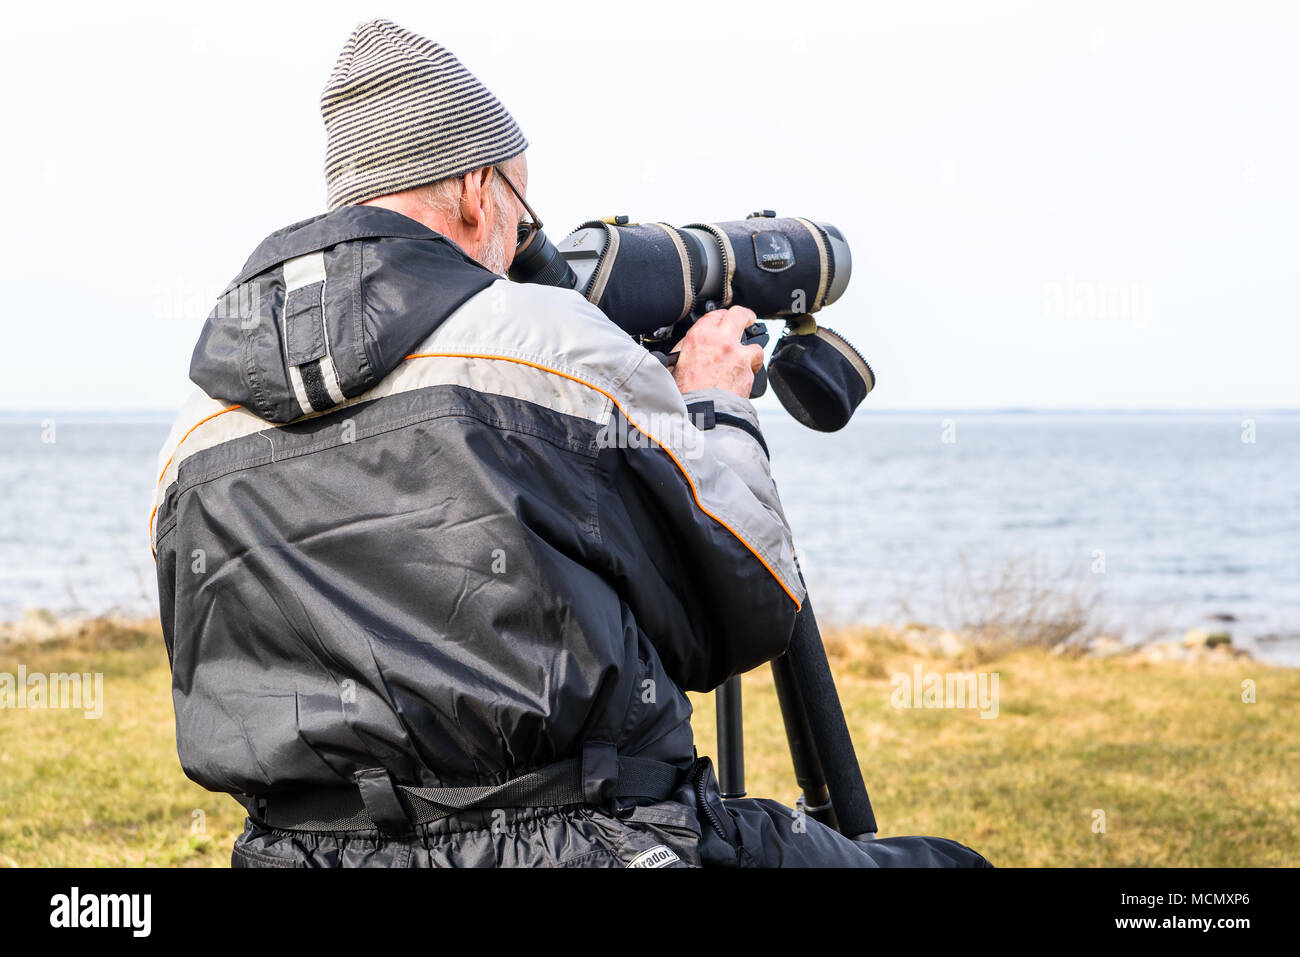 Stora ror, Suecia, 7 de abril de 2018: Documental de la vida cotidiana y el medio ambiente. Senior masculino ornitólogo buscando aves migratorias regresan en rep Foto de stock